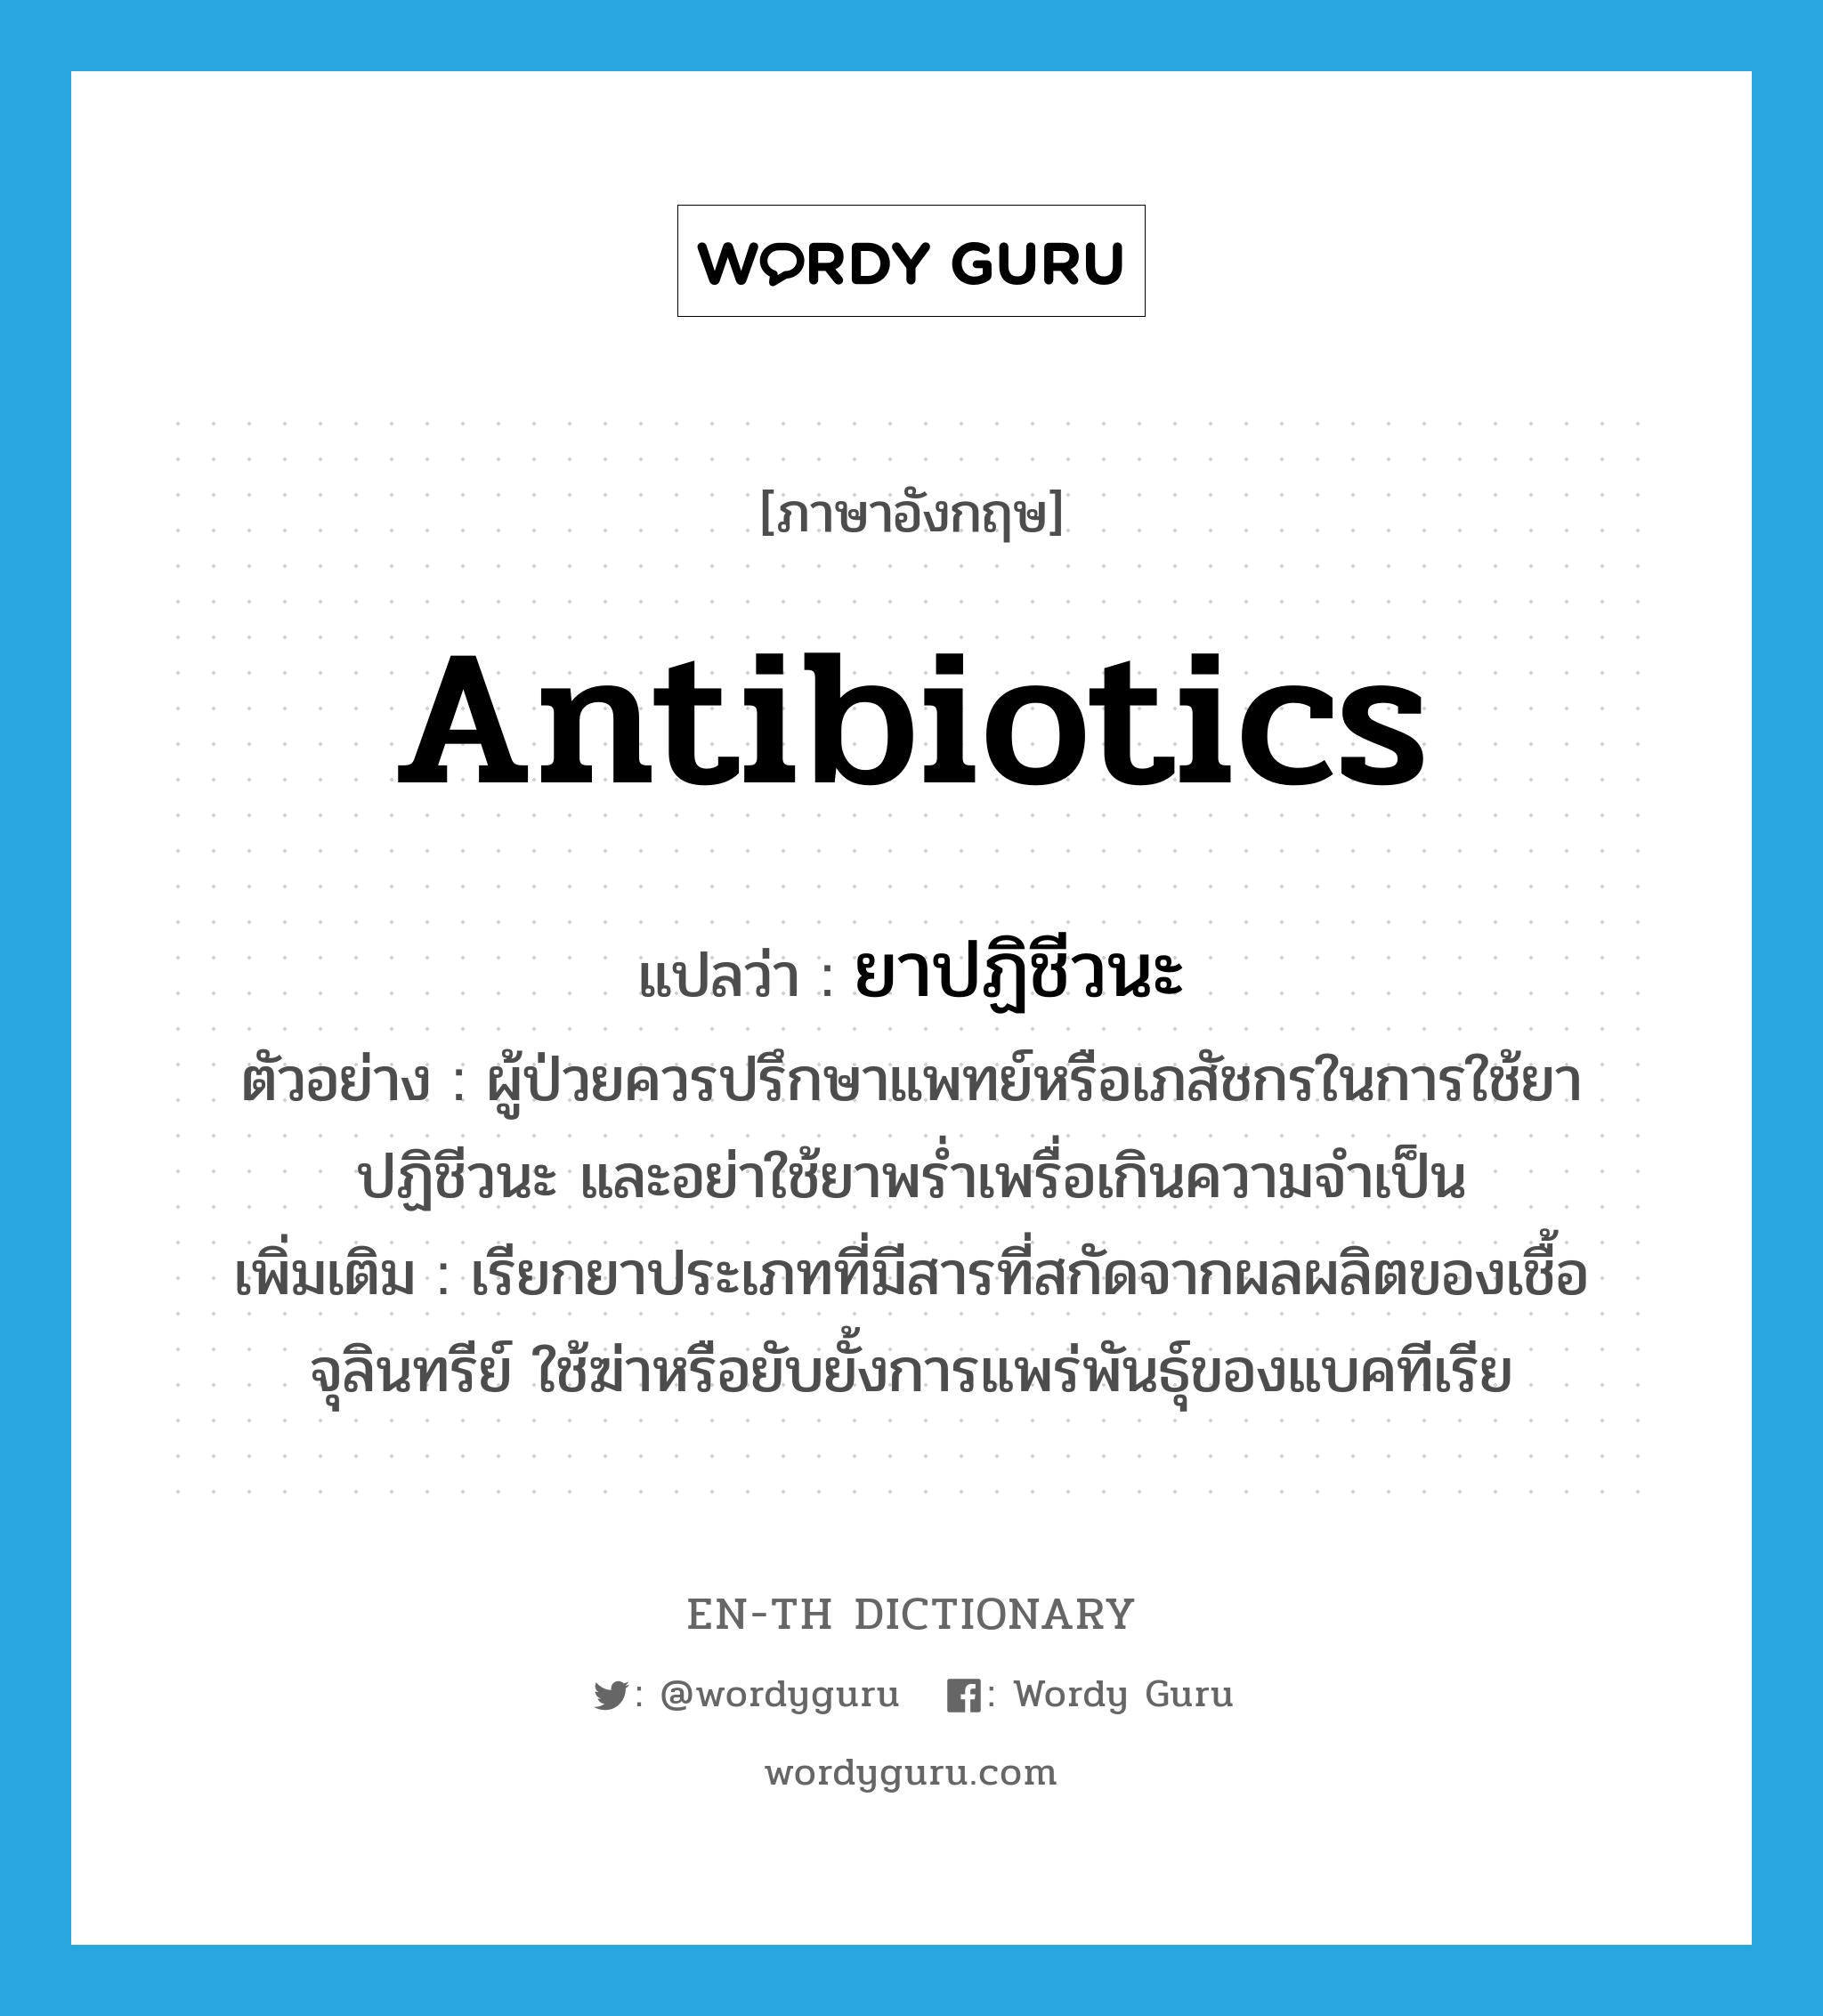 ยาปฏิชีวนะ ภาษาอังกฤษ?, คำศัพท์ภาษาอังกฤษ ยาปฏิชีวนะ แปลว่า antibiotics ประเภท N ตัวอย่าง ผู้ป่วยควรปรึกษาแพทย์หรือเภสัชกรในการใช้ยาปฏิชีวนะ และอย่าใช้ยาพร่ำเพรื่อเกินความจำเป็น เพิ่มเติม เรียกยาประเภทที่มีสารที่สกัดจากผลผลิตของเชื้อจุลินทรีย์ ใช้ฆ่าหรือยับยั้งการแพร่พันธุ์ของแบคทีเรีย หมวด N